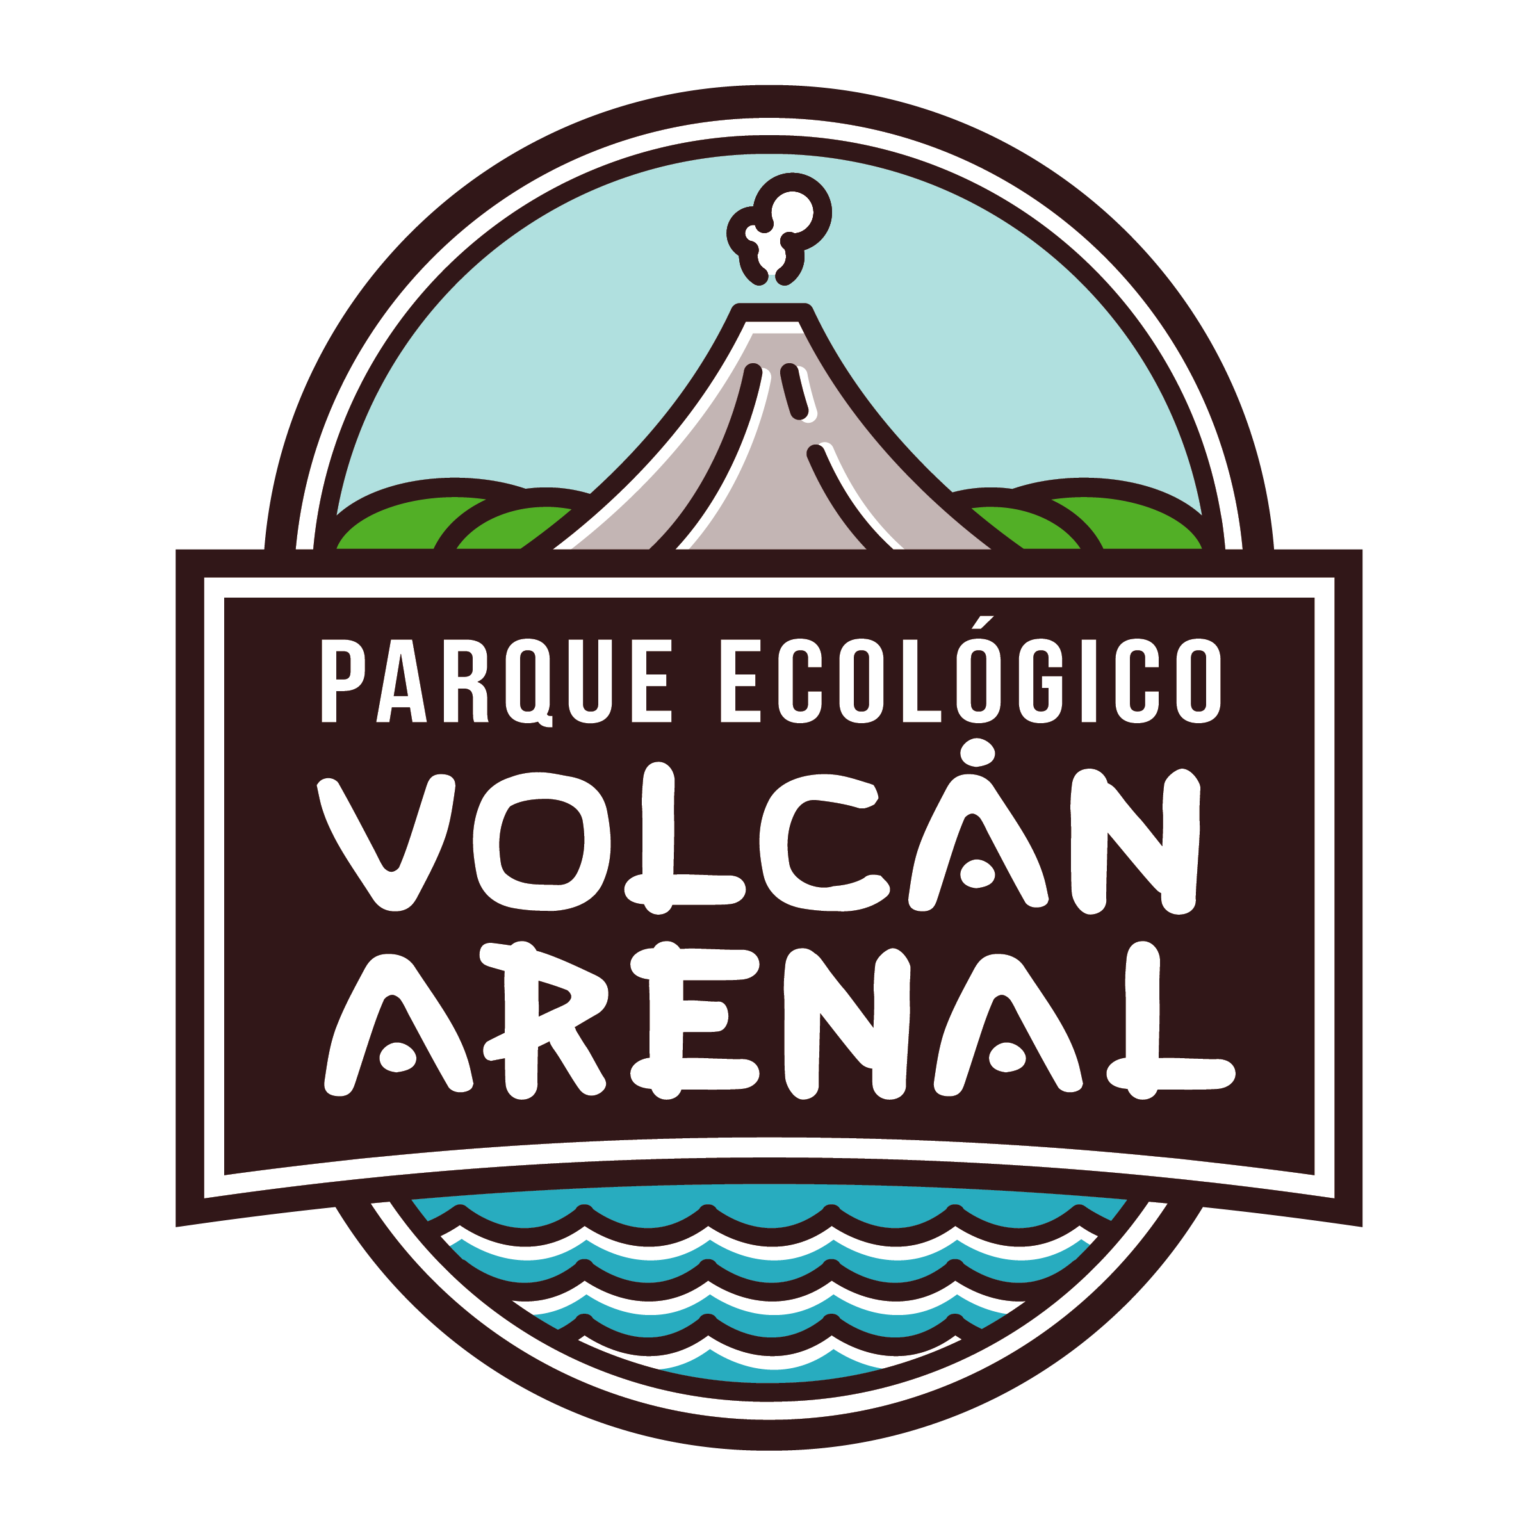 Parque Ecologico Volcan Arenal